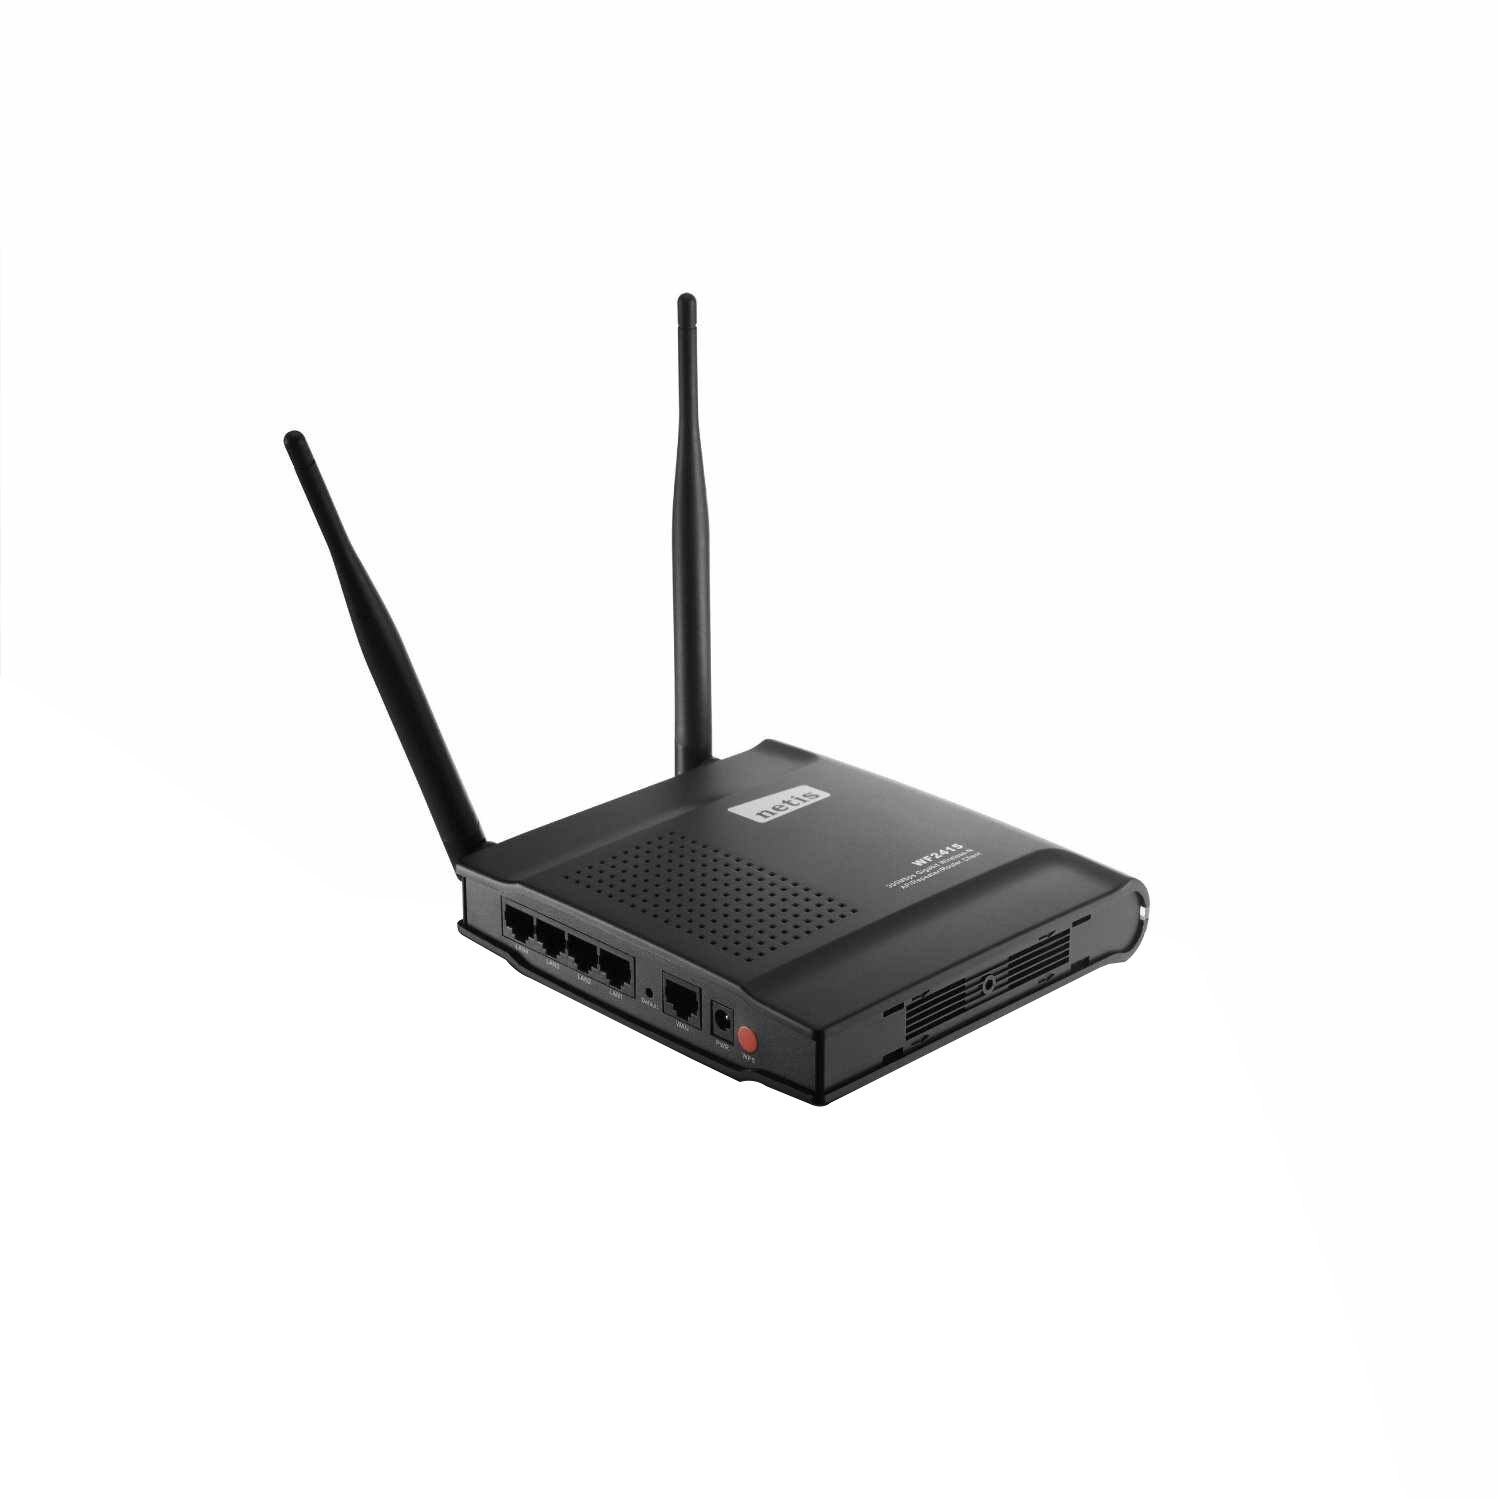 Predict alarm volume Router wireless Netis WF2415 N Gigabit, 300Mbps - eMAG.ro